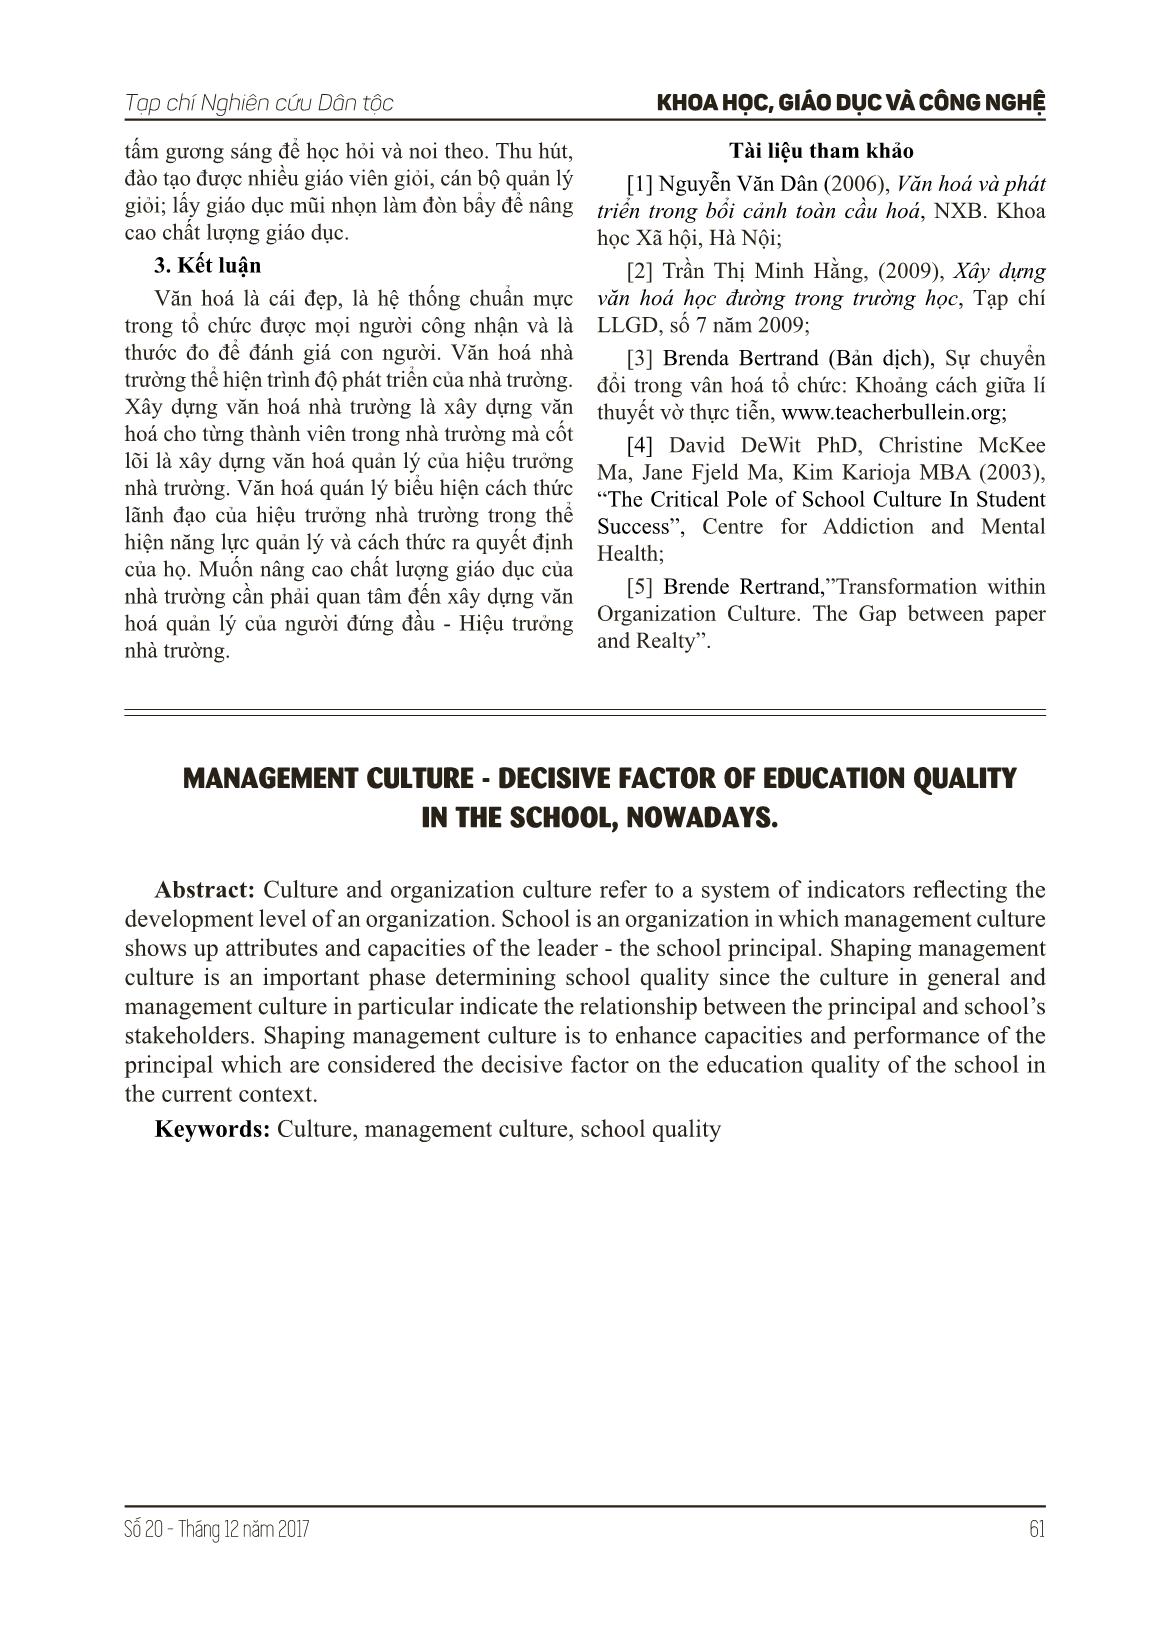 Văn hóa quản lý - yếu tố quyết định chất lượng giáo dục trong nhà trường hiện nay trang 5